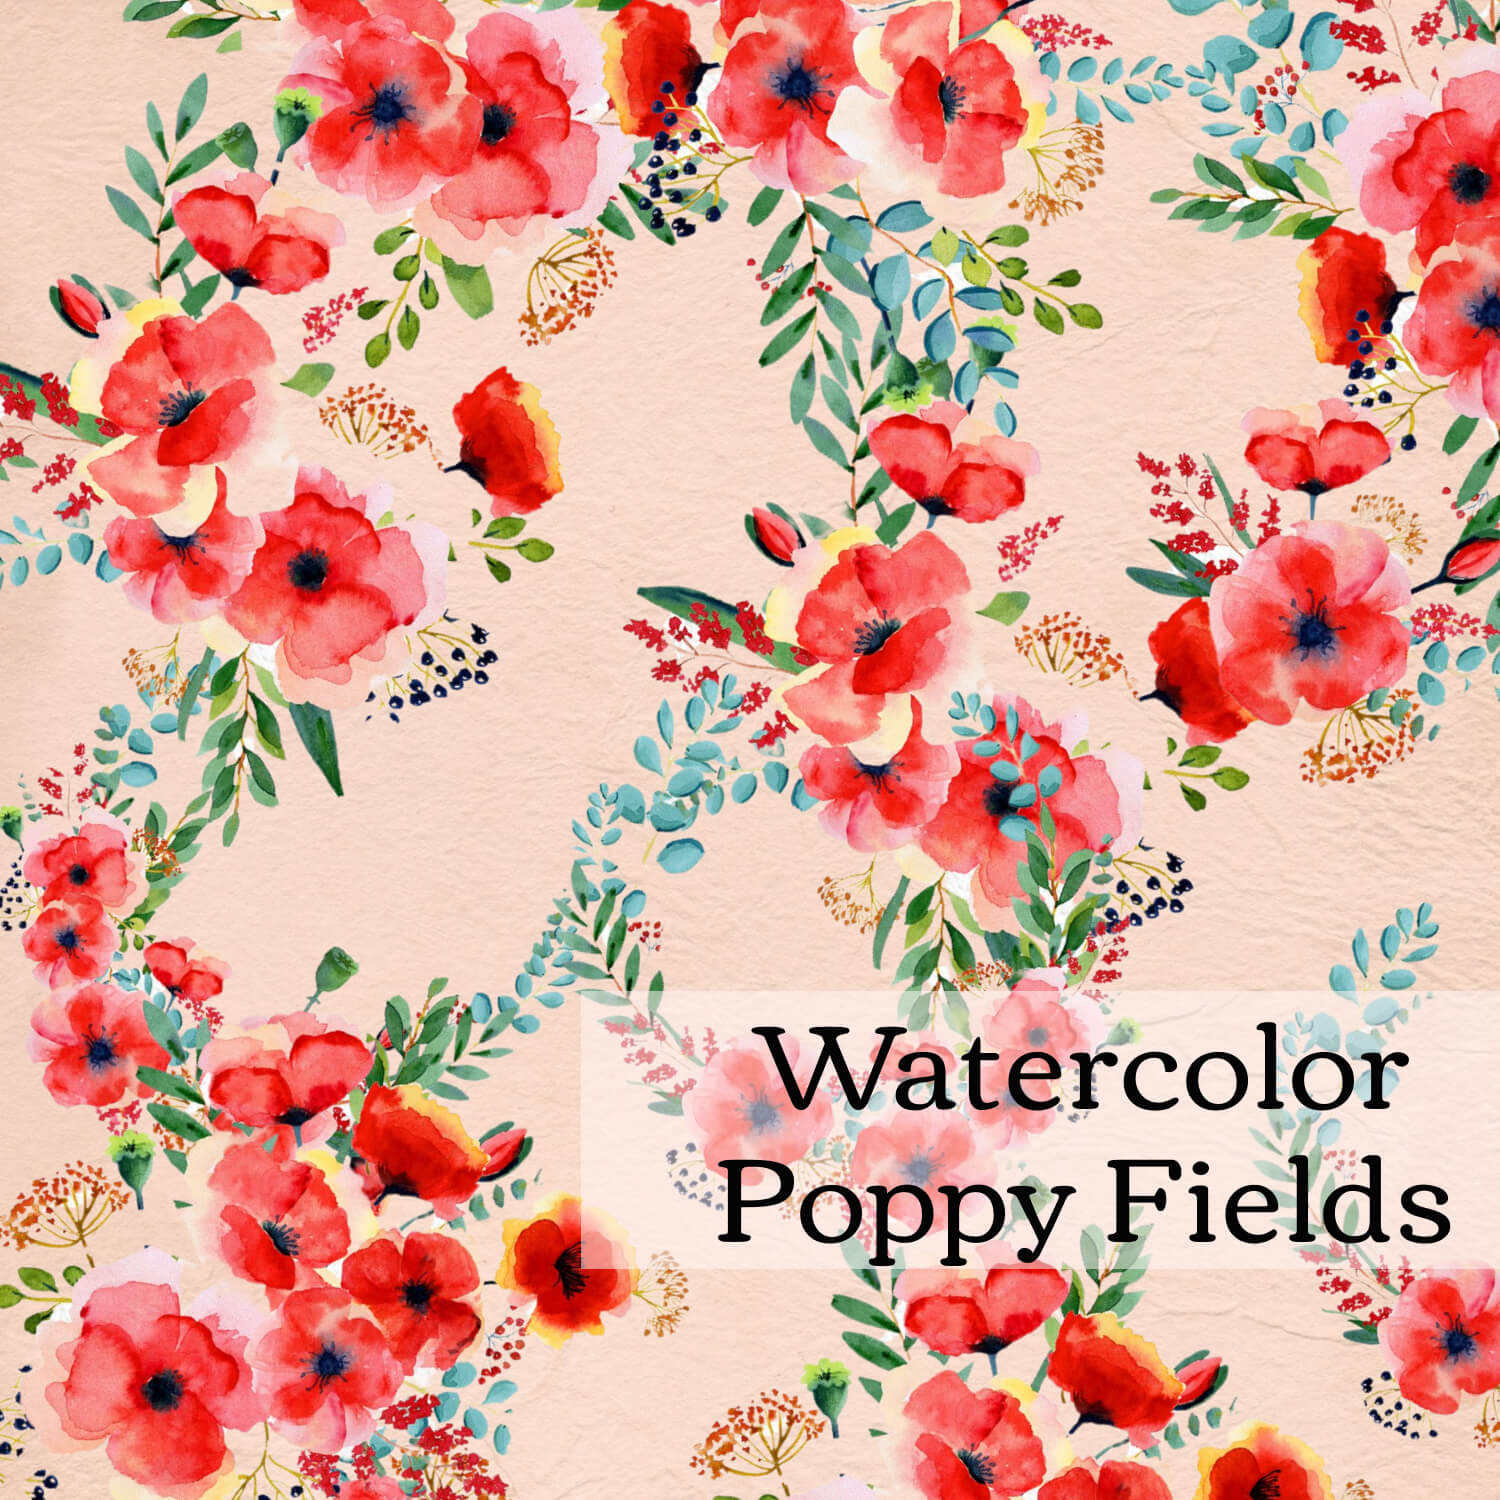 Watercolor Poppy Fields in a Square Shape.